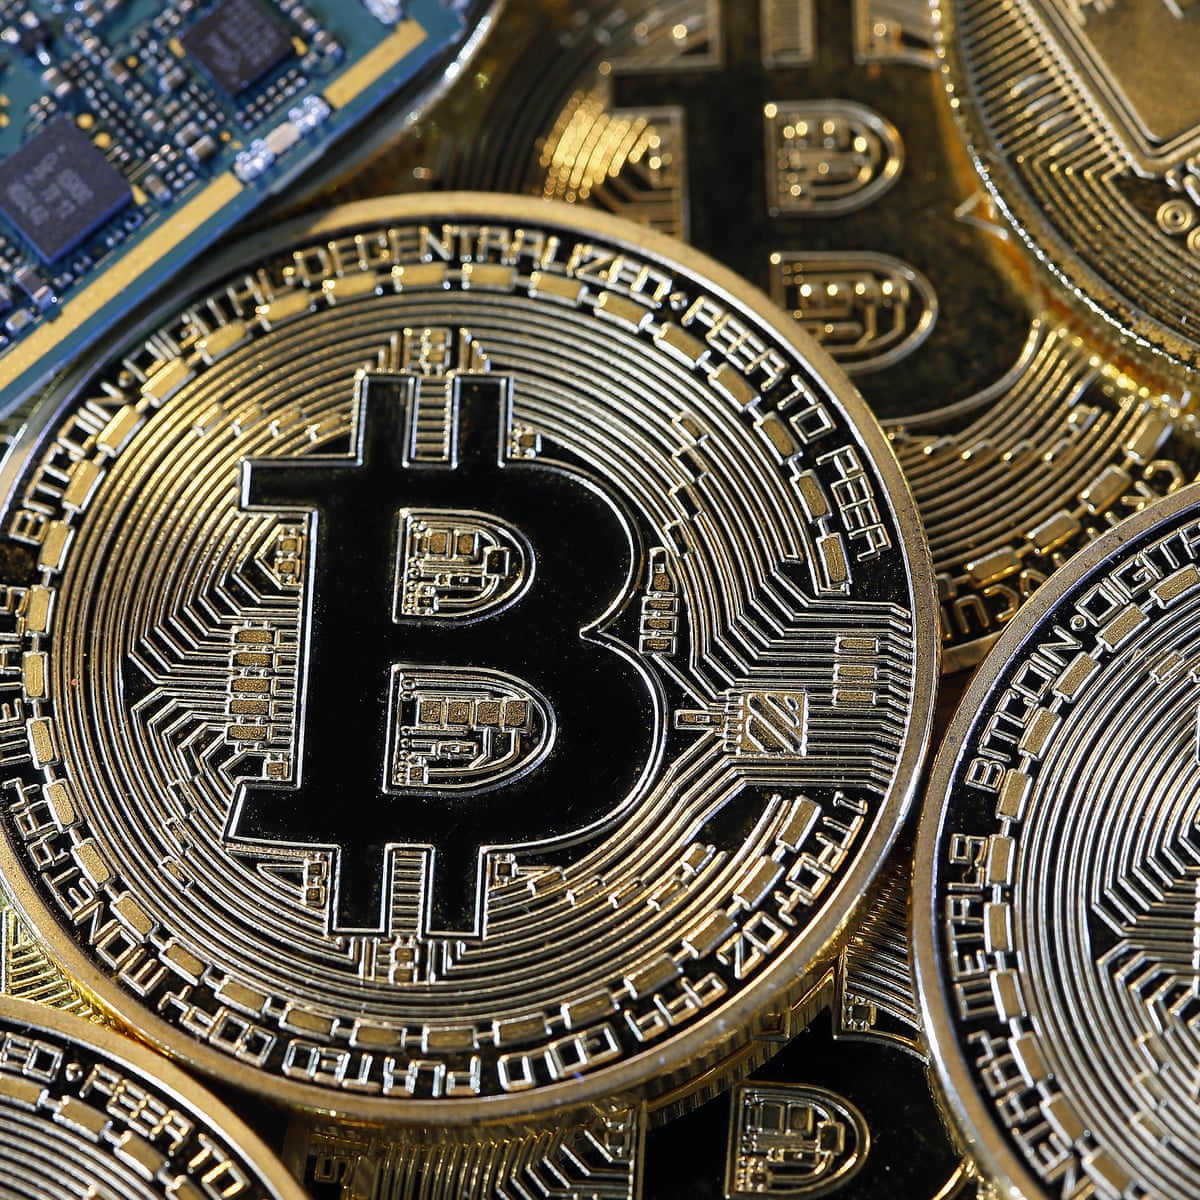 Legalitatea monedei bitcoin după țară sau teritoriu - Wikipedia